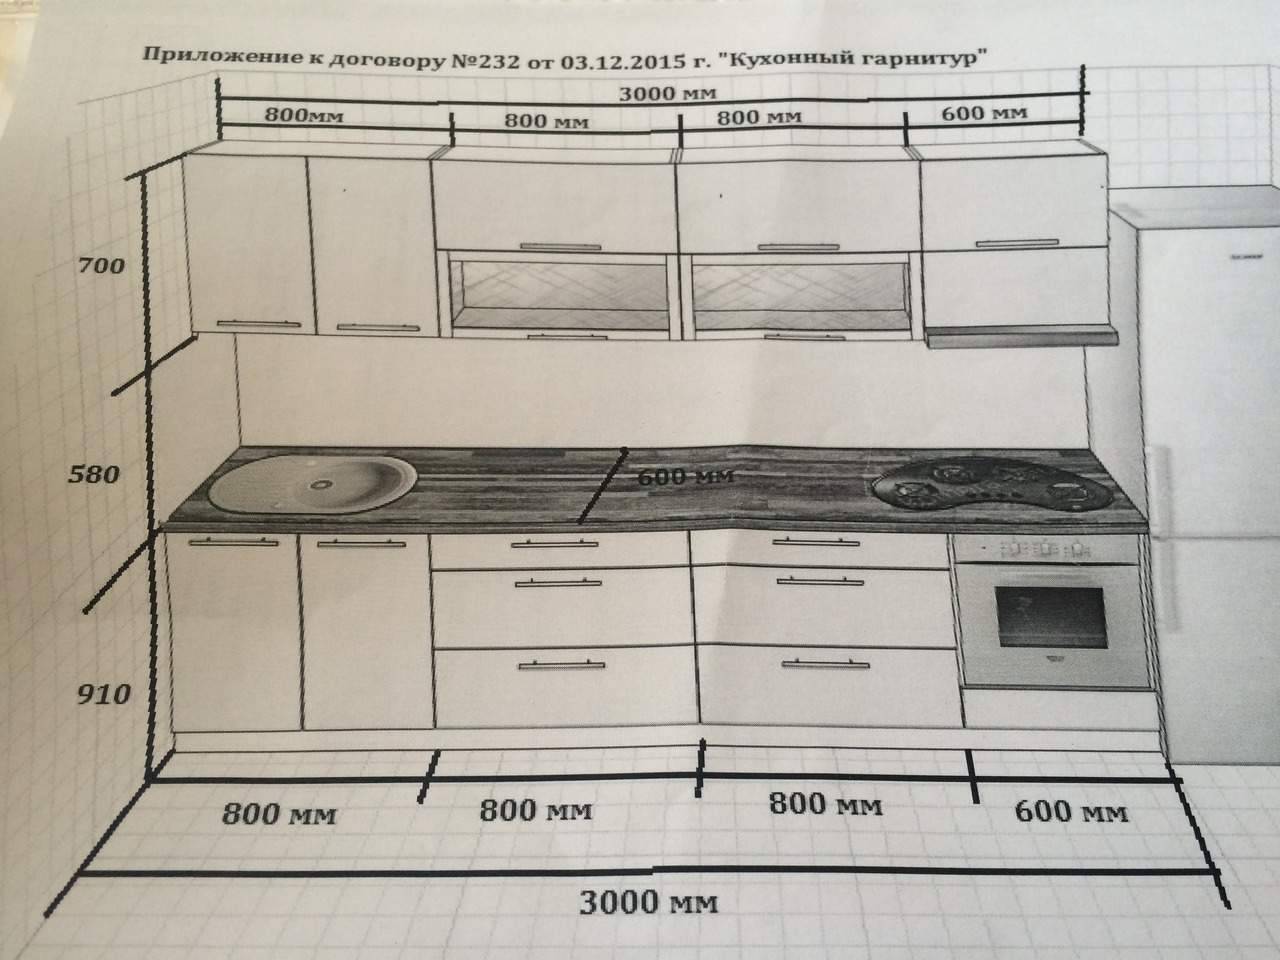 Керамогранитная плитка на кухне — на 99% идеальный пол